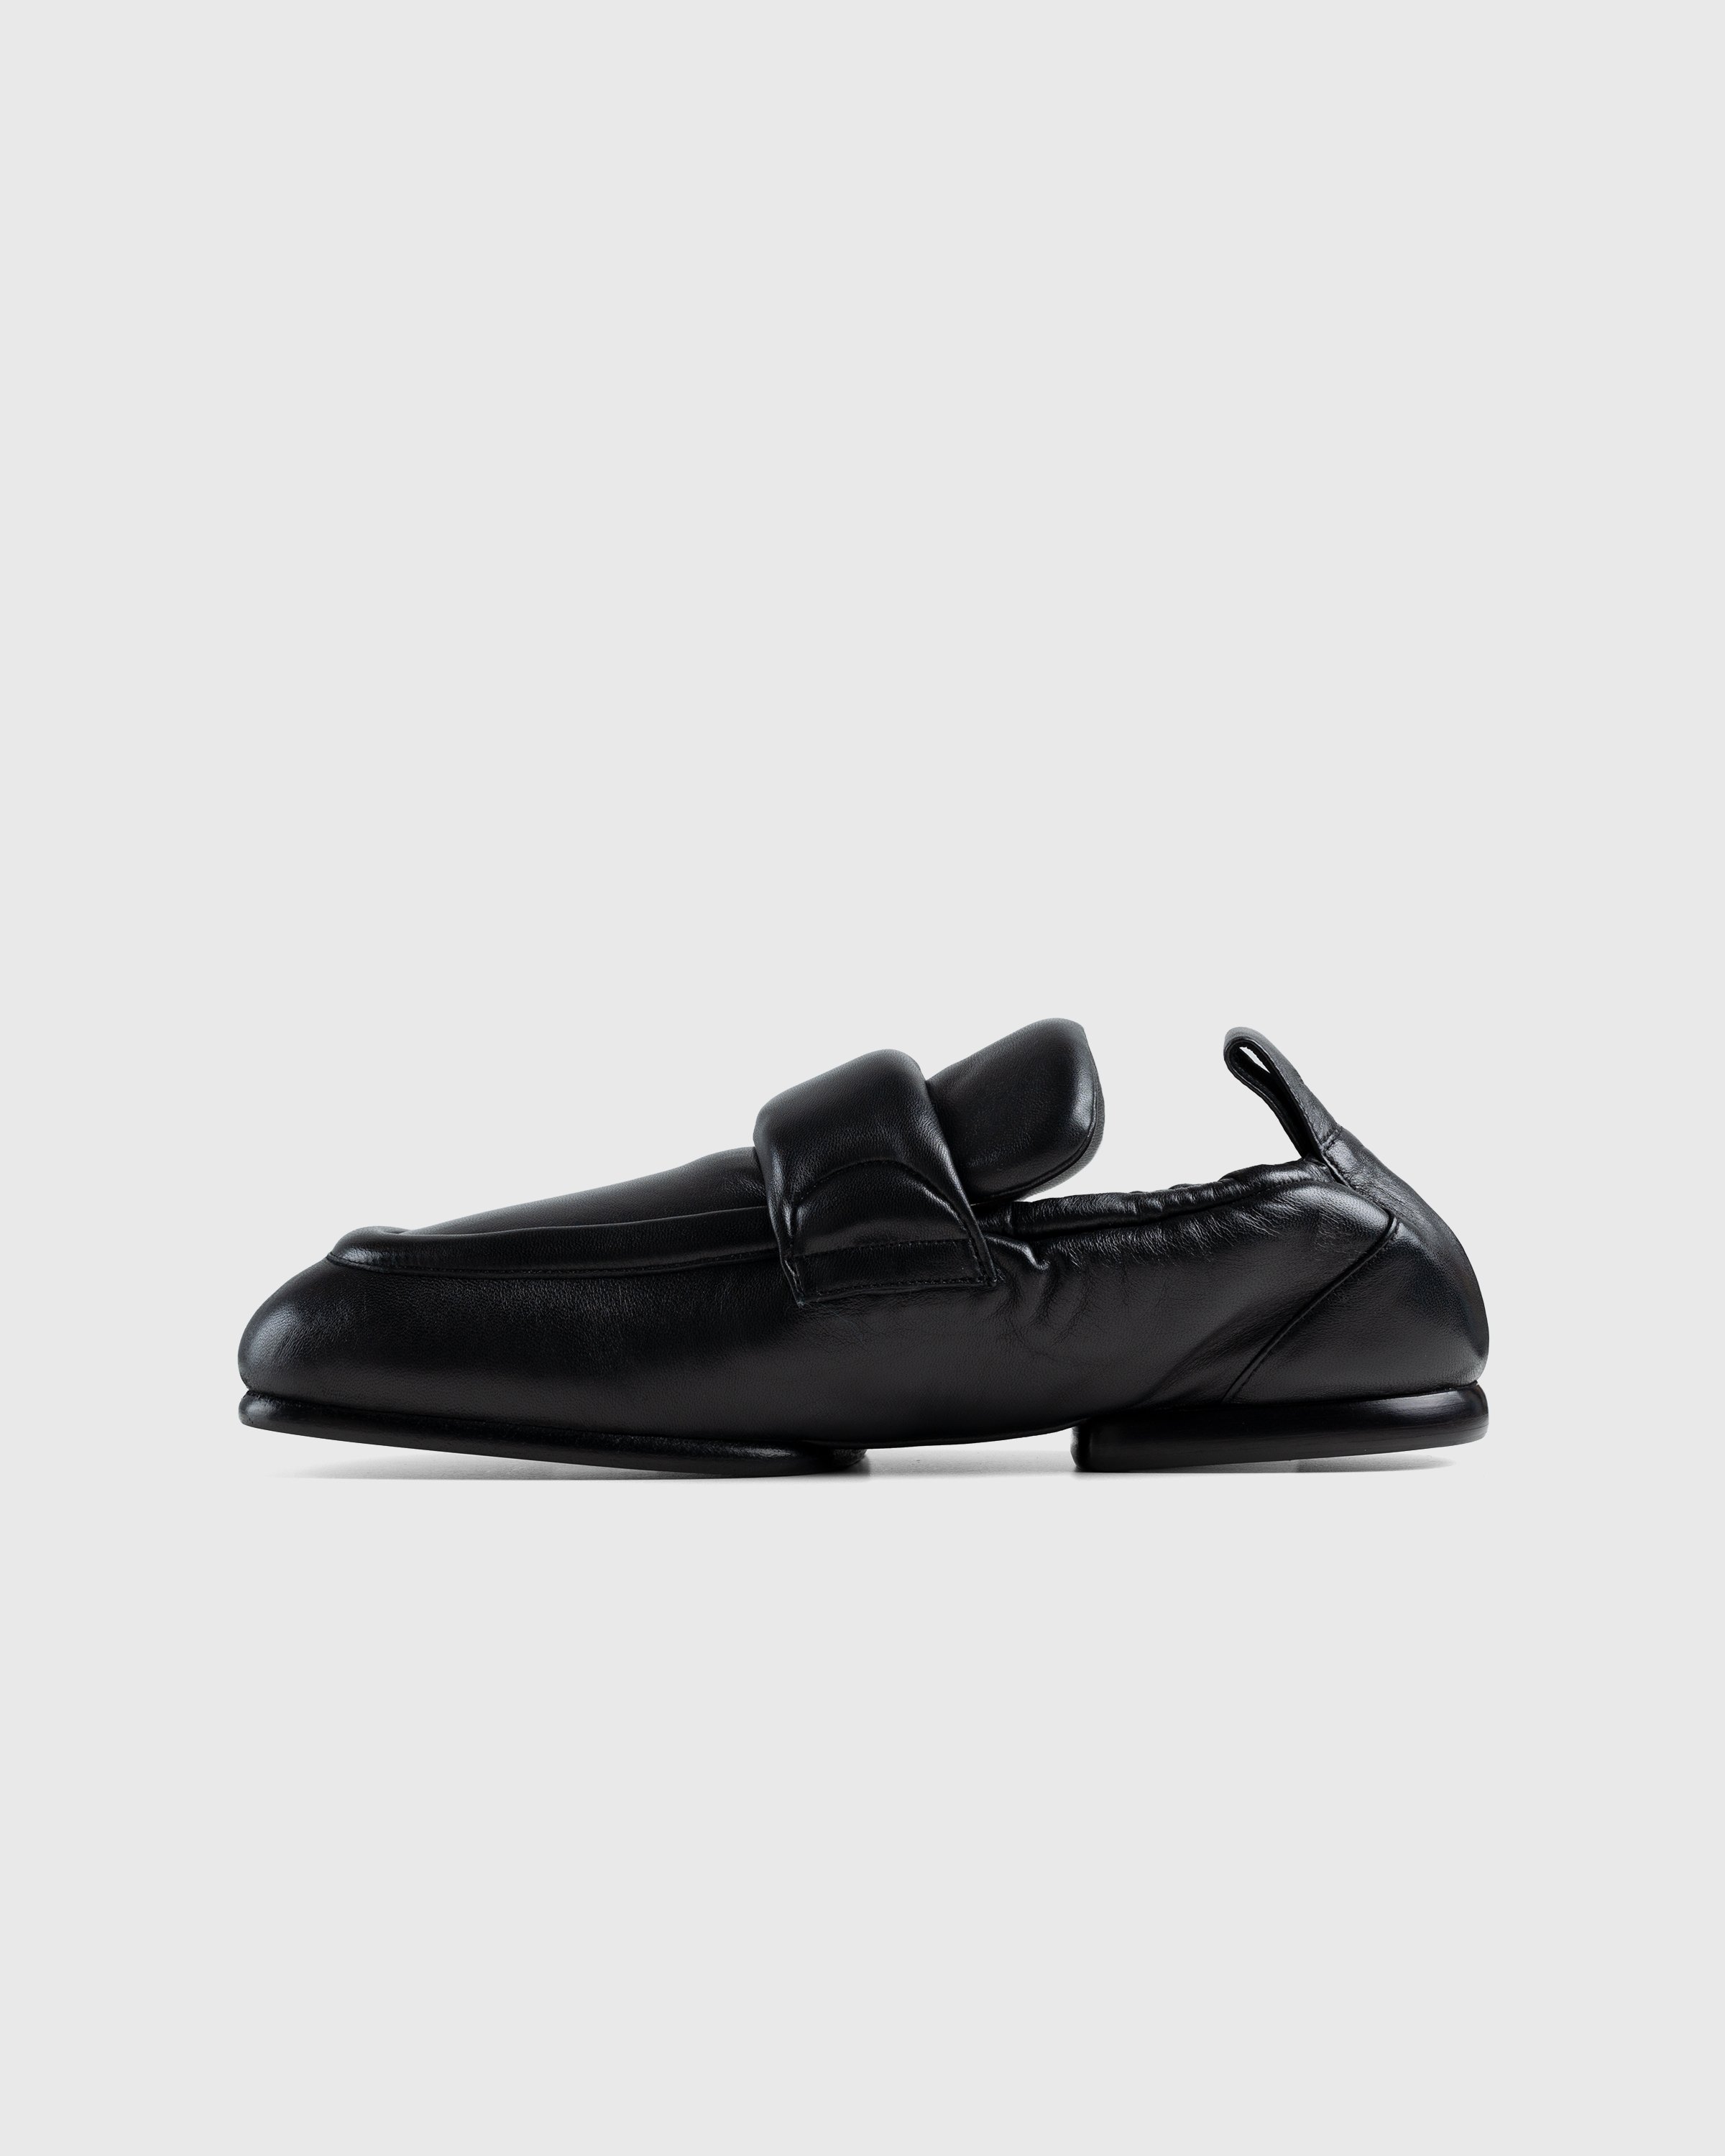 Dries van Noten - Padded Loafers - Footwear - Black - Image 2